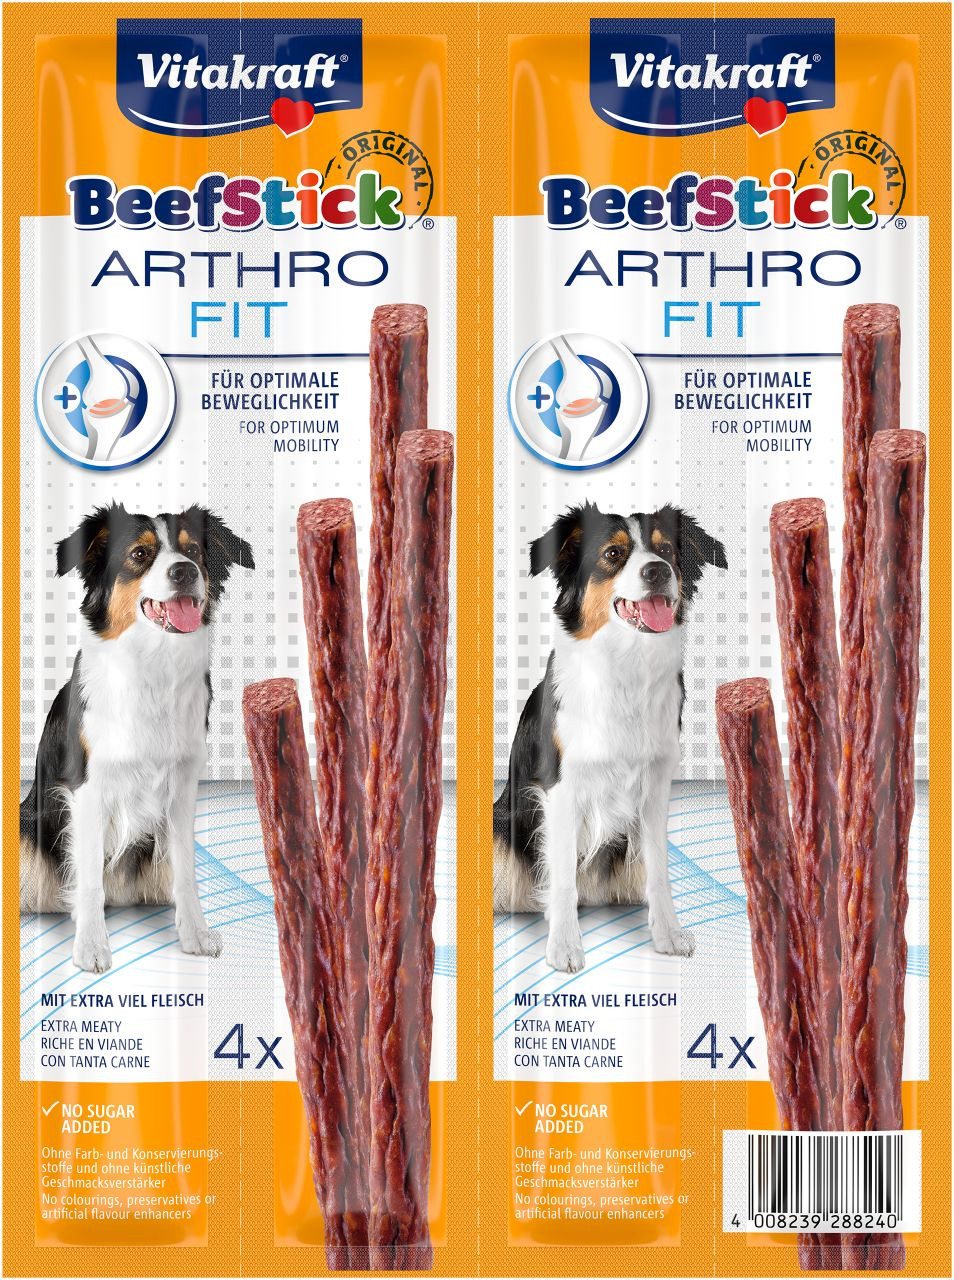 Immagine di 10 confezioni Vitakraft Beefstick Arthrofit Bastoncini per cane (4 st.)